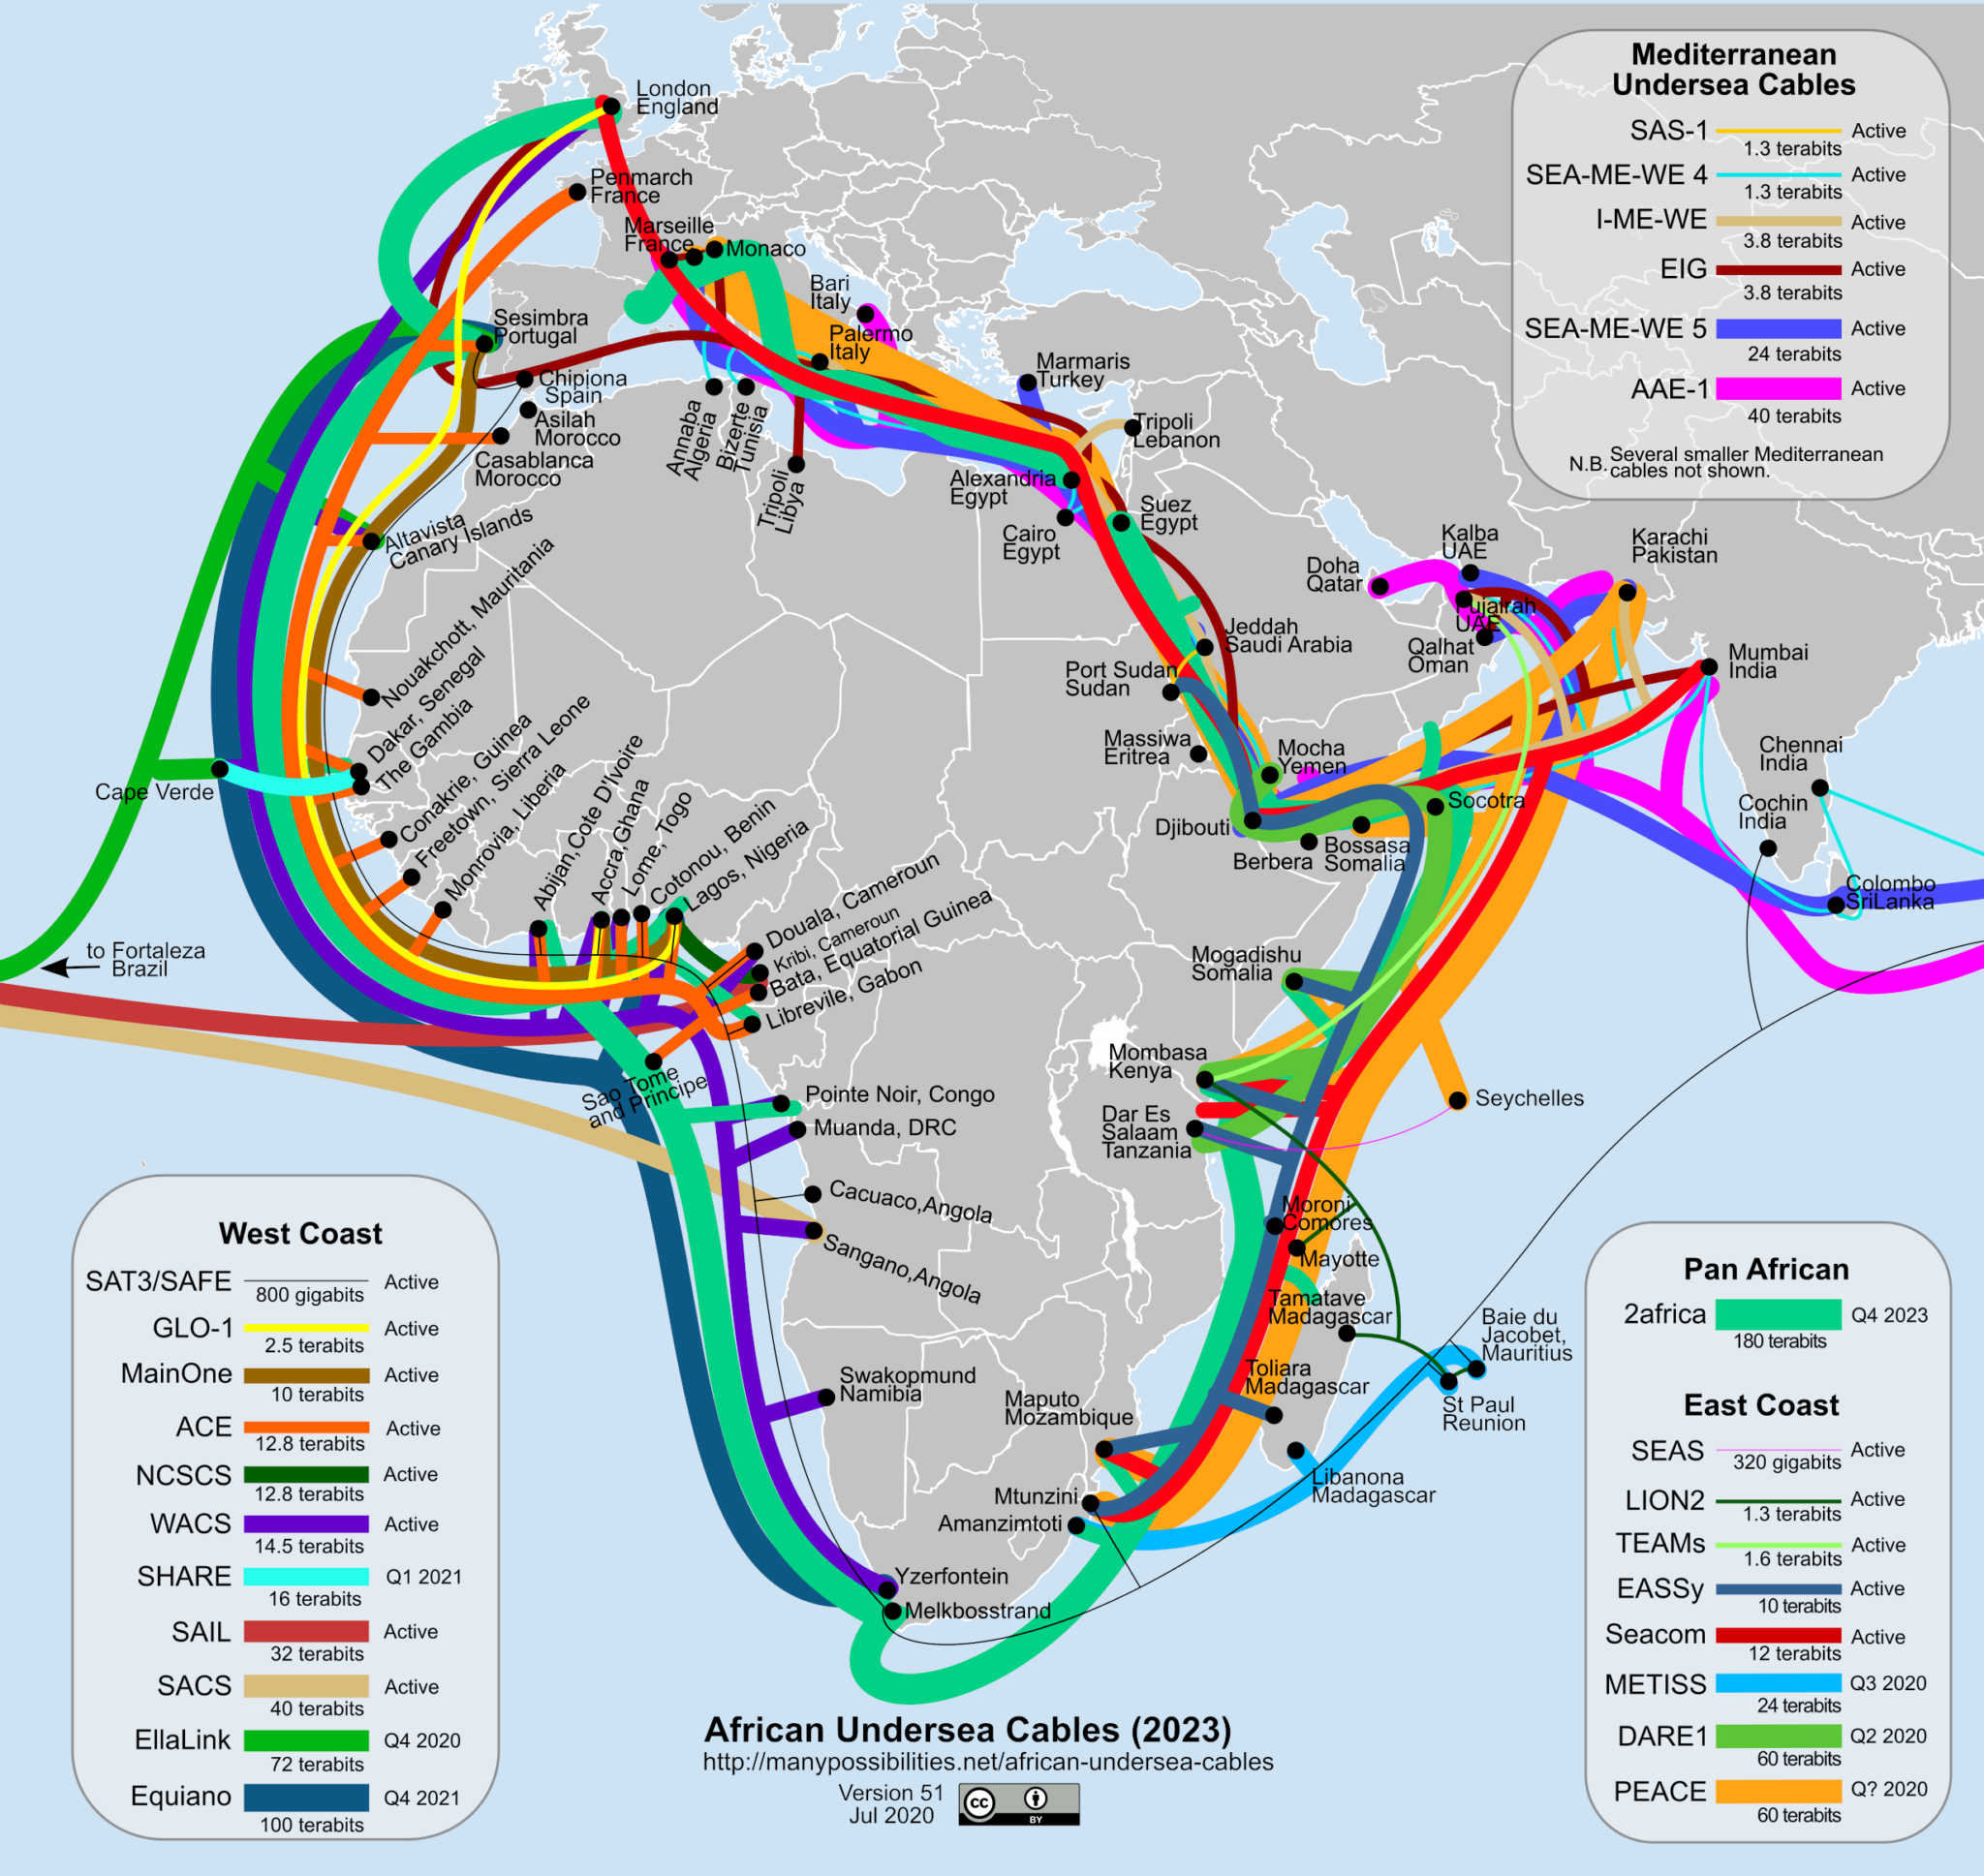 Perturbations de la connectivité Internet dans plusieurs pays africains le 14 mars dernier : le cas du Gabon